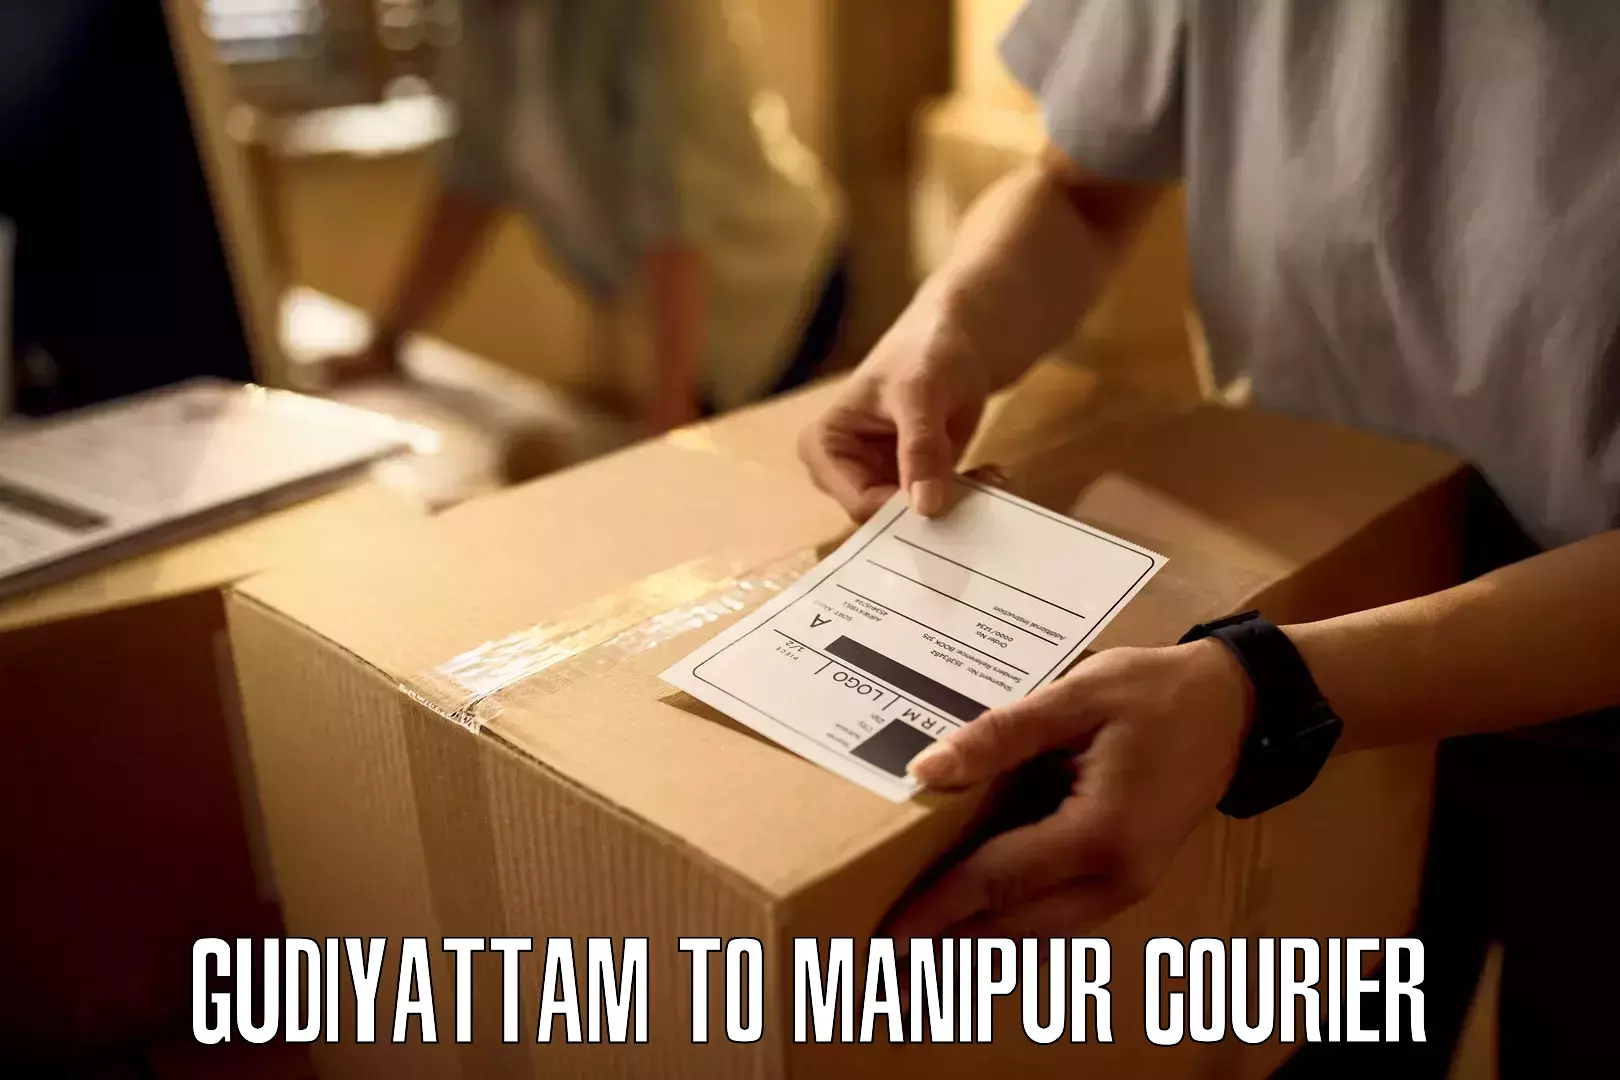 Nationwide courier service Gudiyattam to Churachandpur